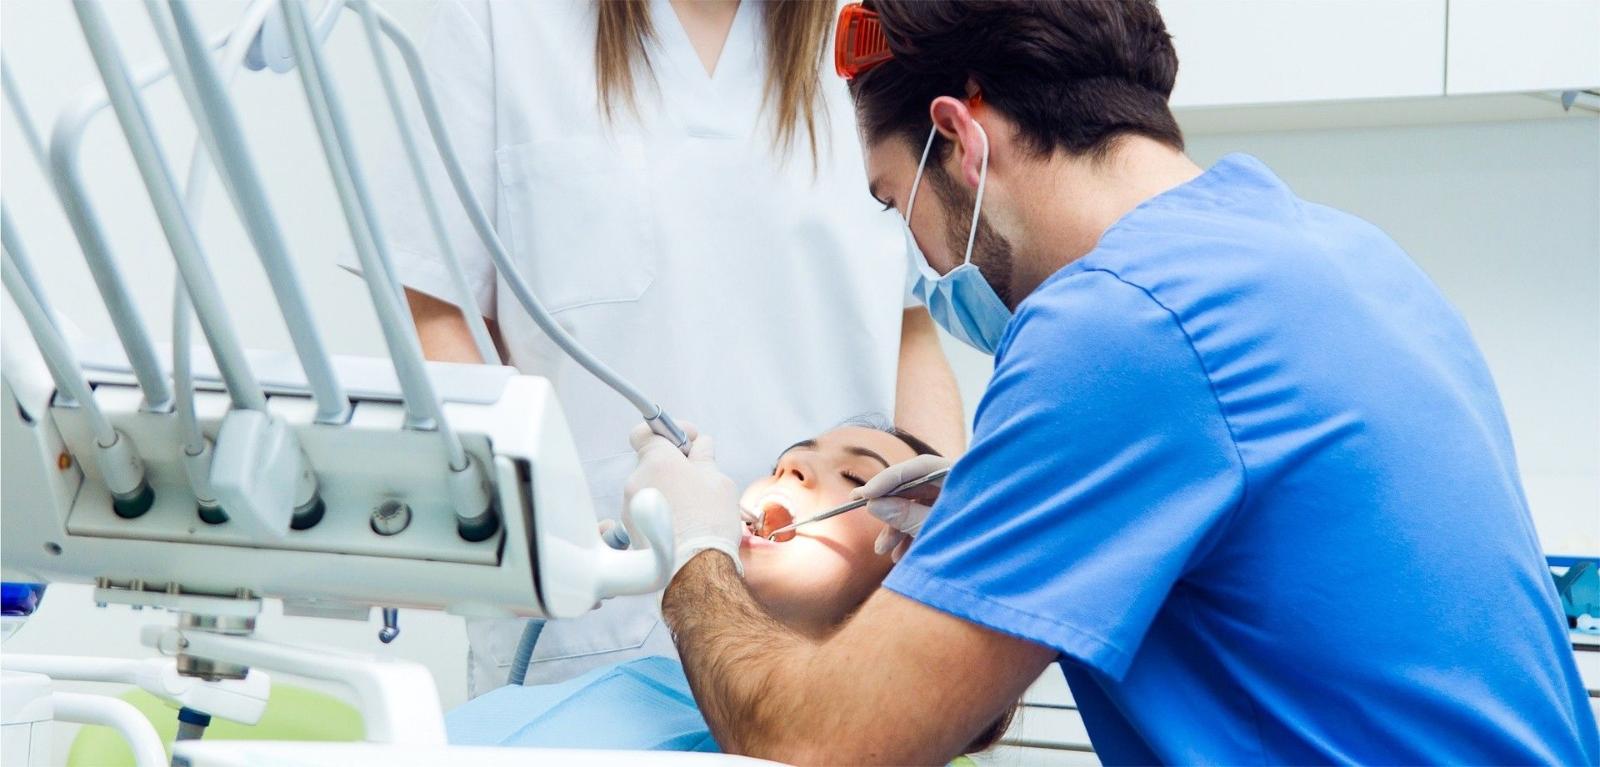 Современная качественная стоматология — это очень высокотехнологичная отрасль